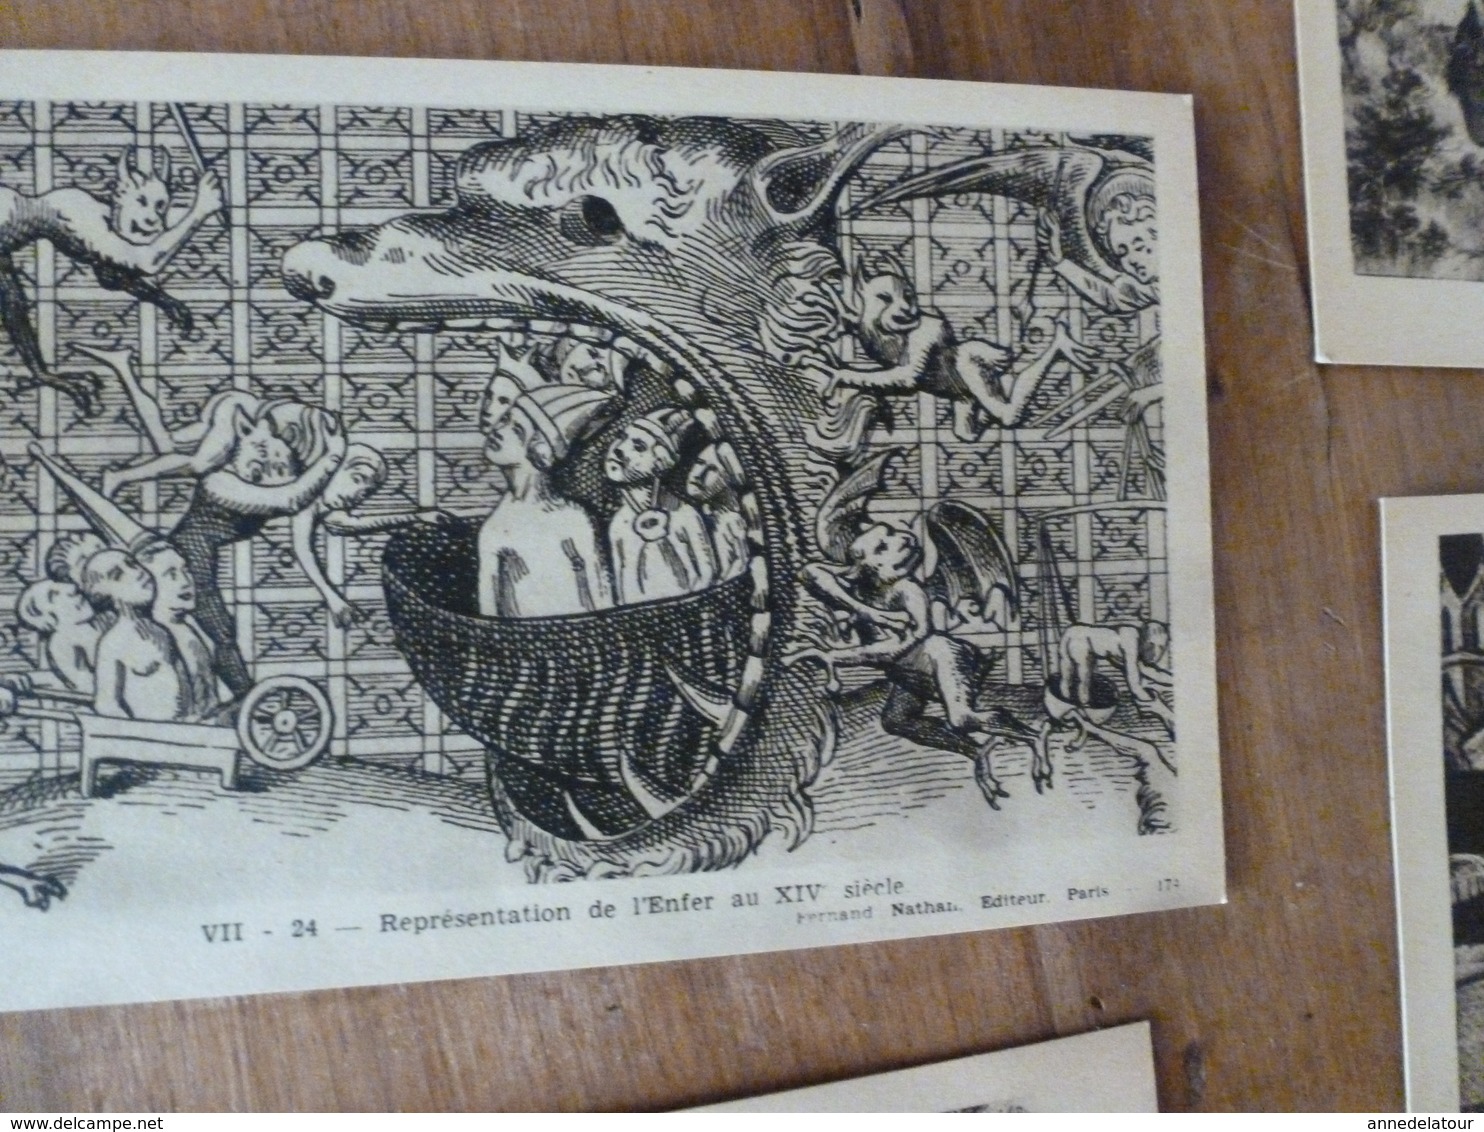 Lot de 11 Cartes Postales -->pour connaitre notre Histoire :LA VIE FRANCAISE A L'EPOQUE FEODALE , par Alfred Carlier